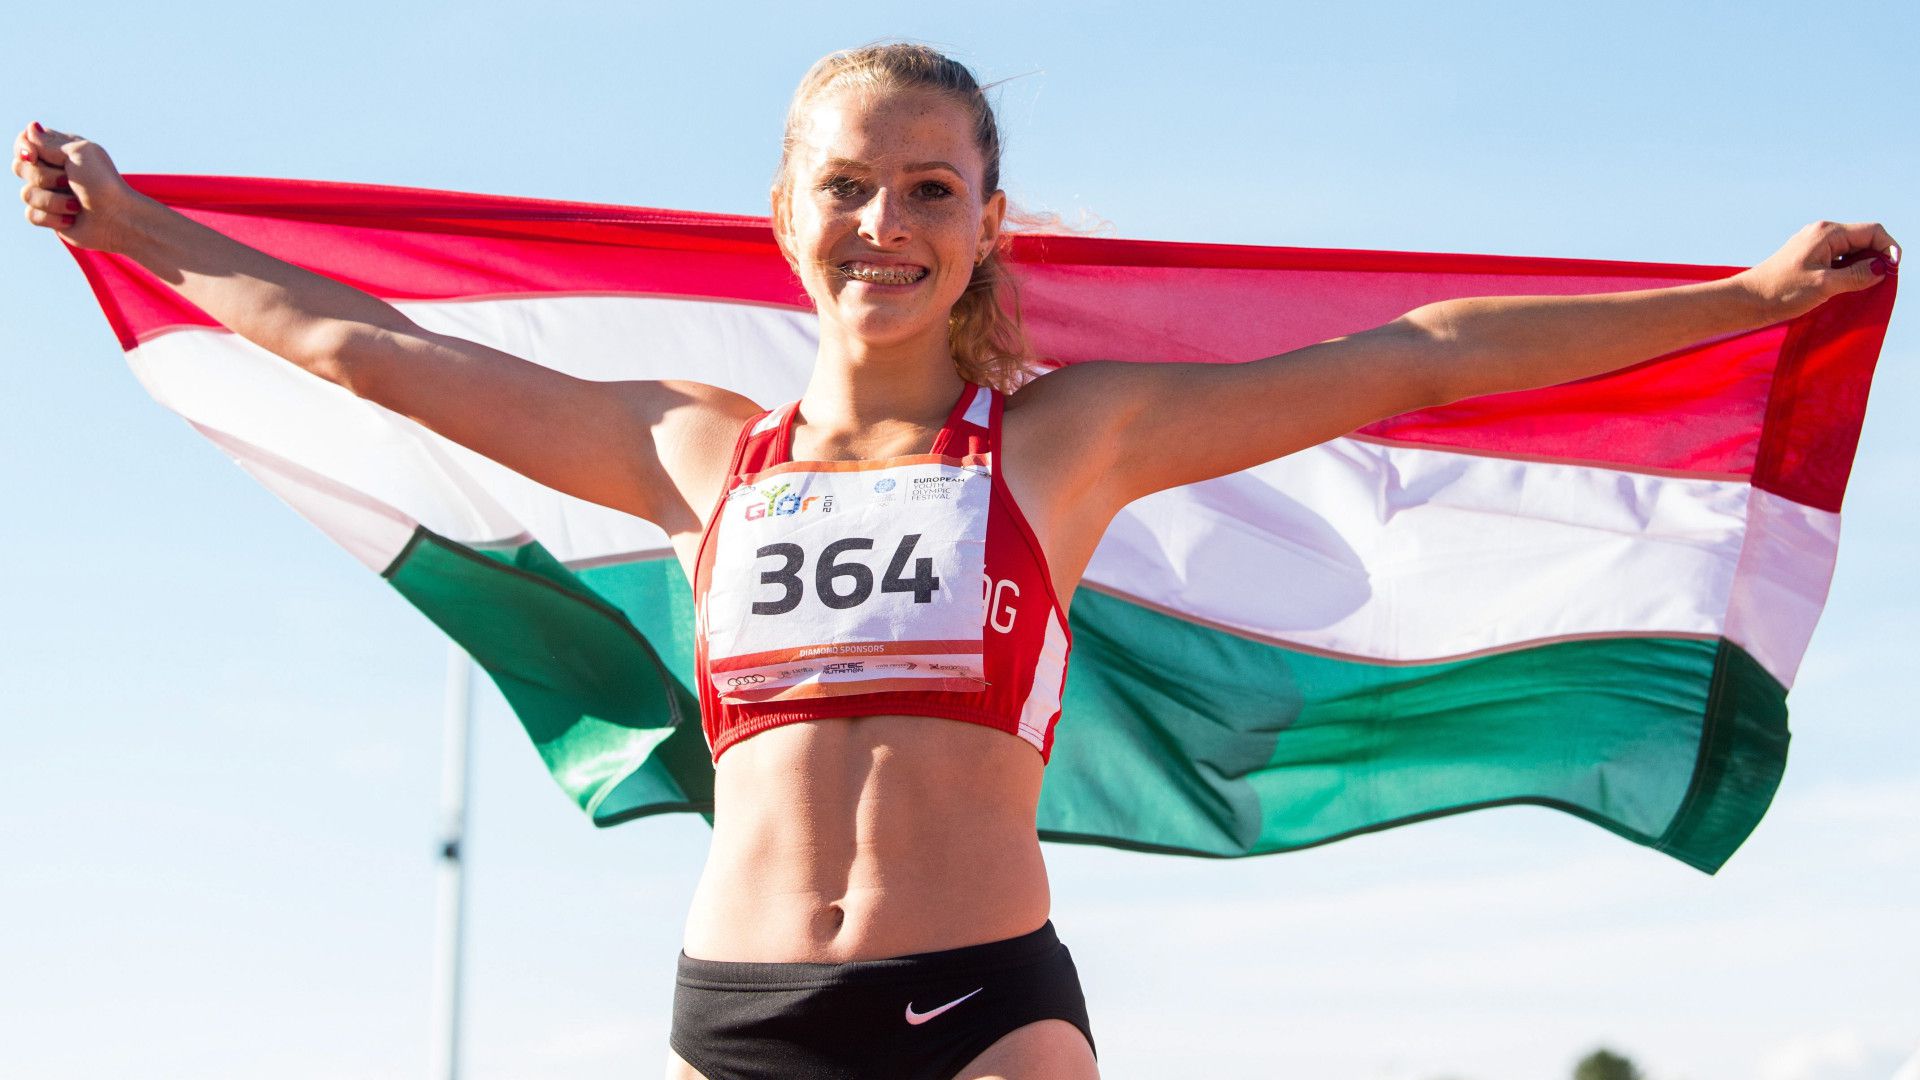 A hazai vébé az álma a magyar sprintkirálynőnek